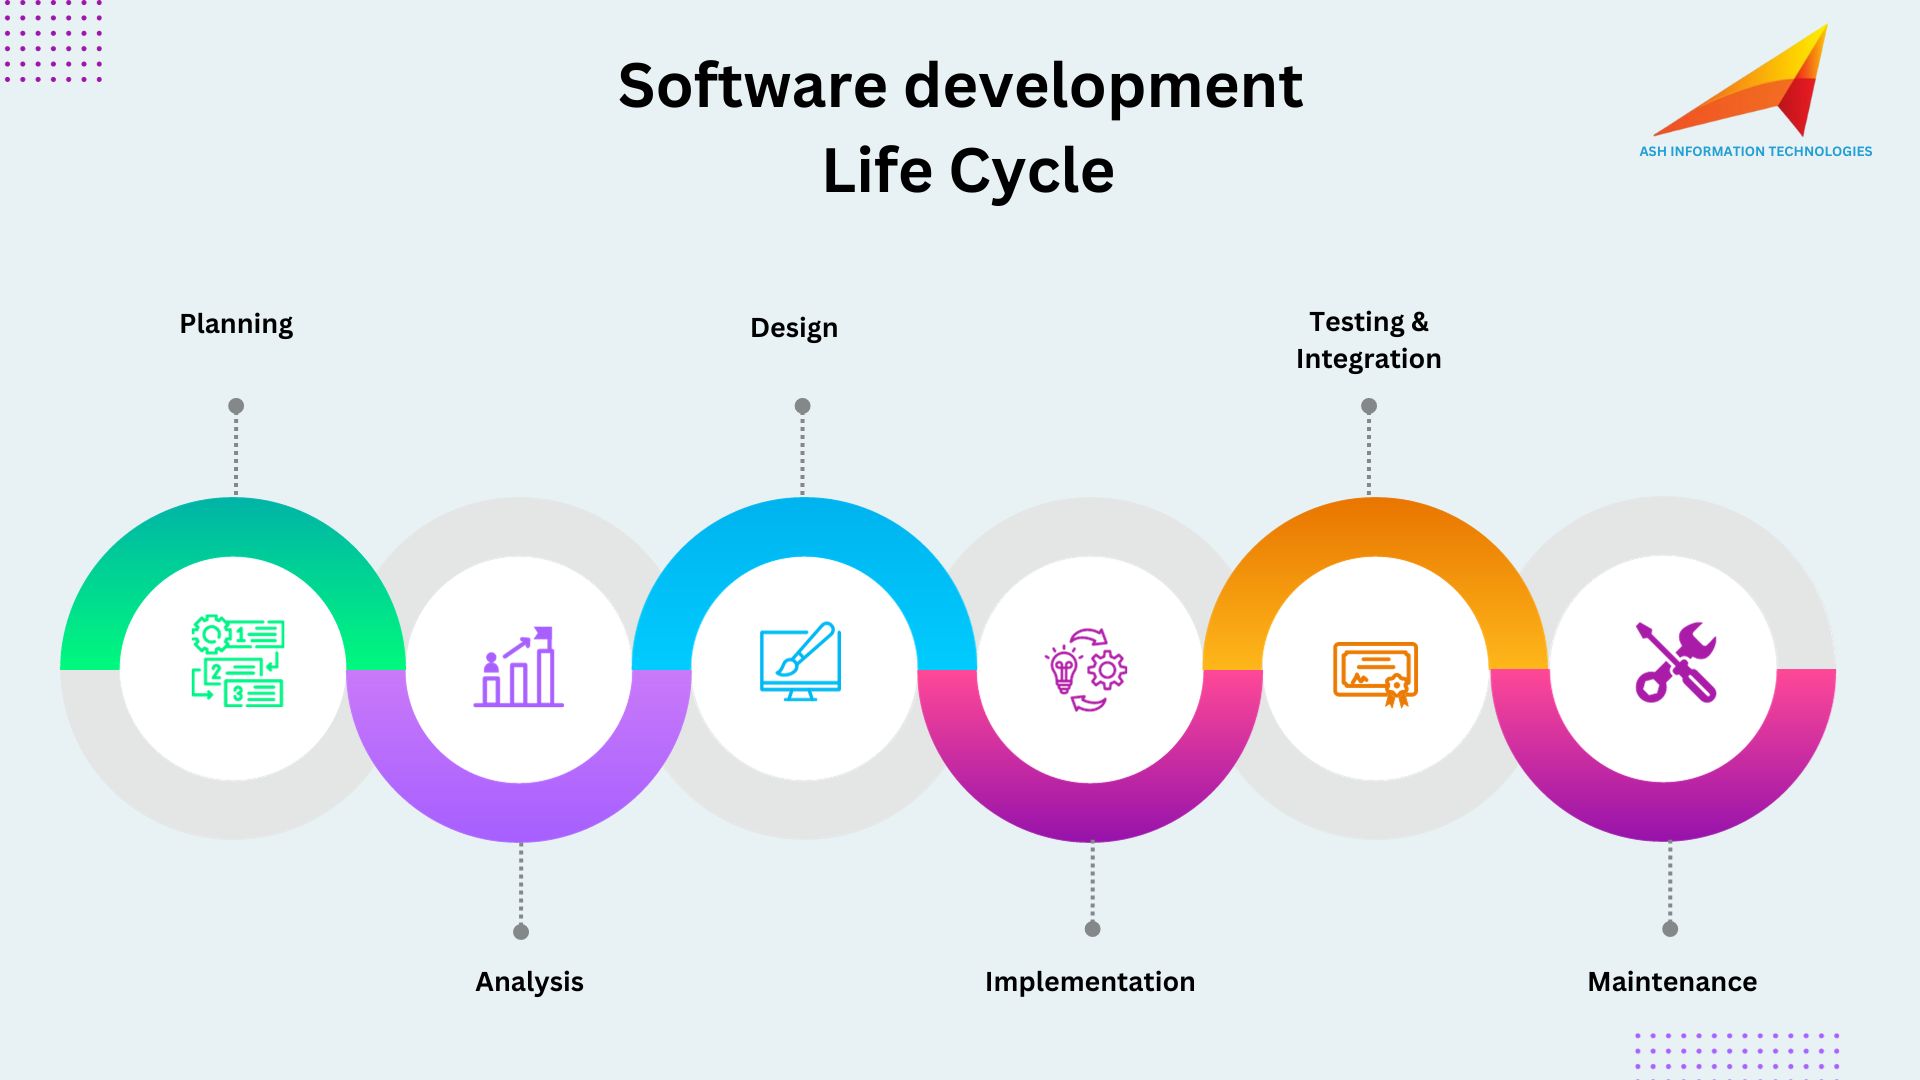 Understanding the software development life cycle (SDLC)